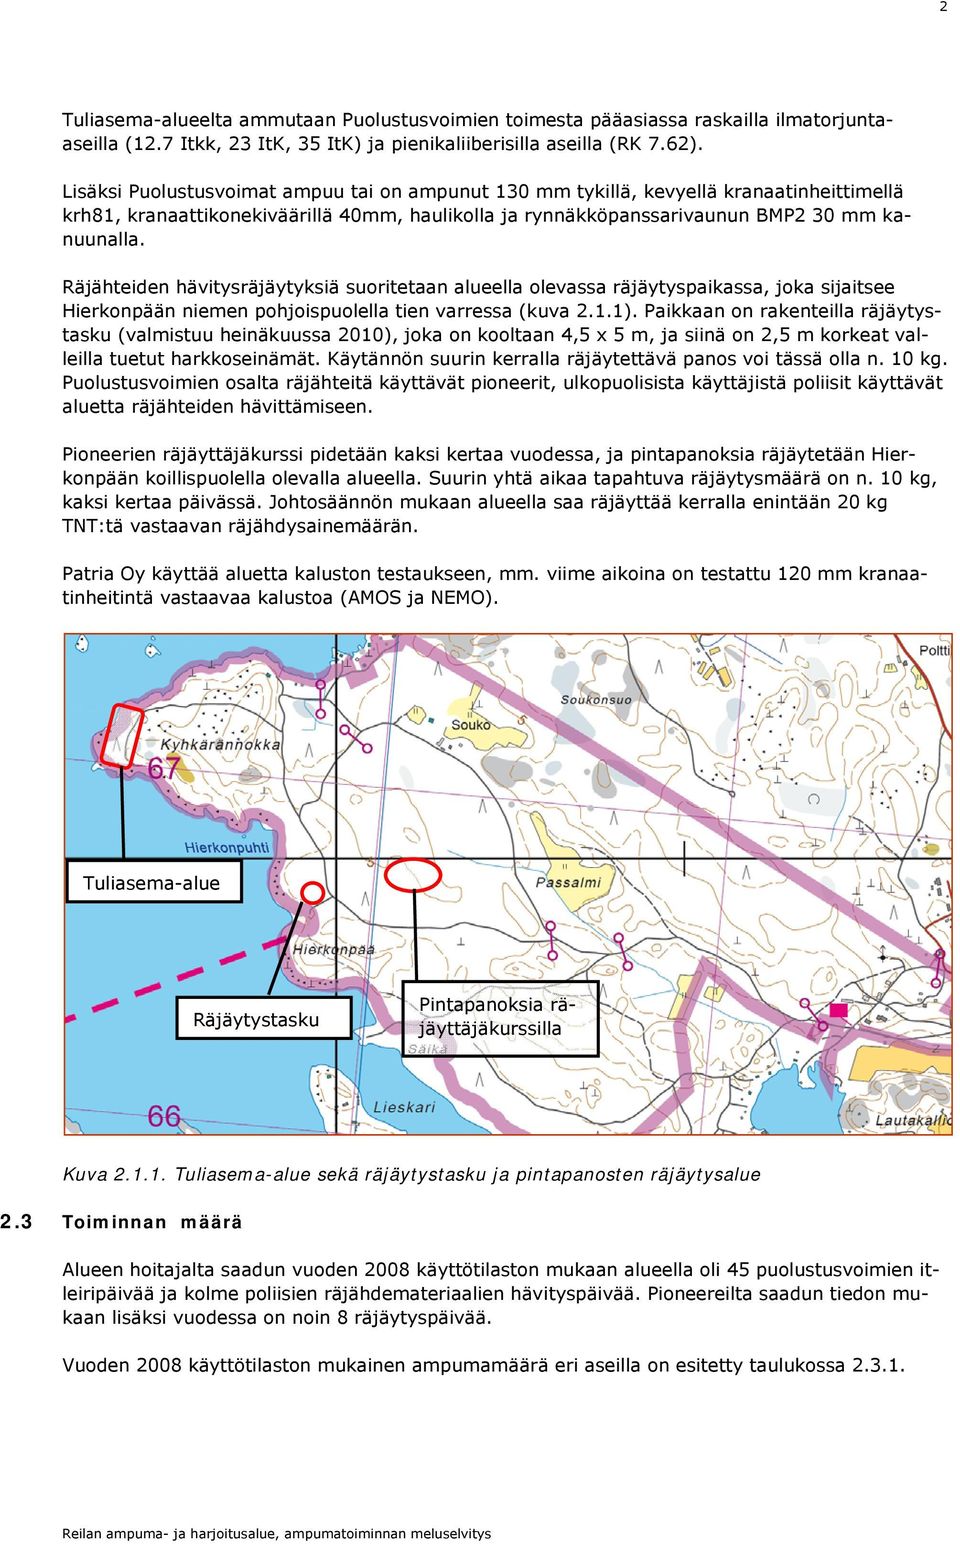 Räjähteiden hävitysräjäytyksiä suoritetaan alueella olevassa räjäytyspaikassa, joka sijaitsee Hierkonpään pohjoispuolella tien varressa (kuva 2.1.1).